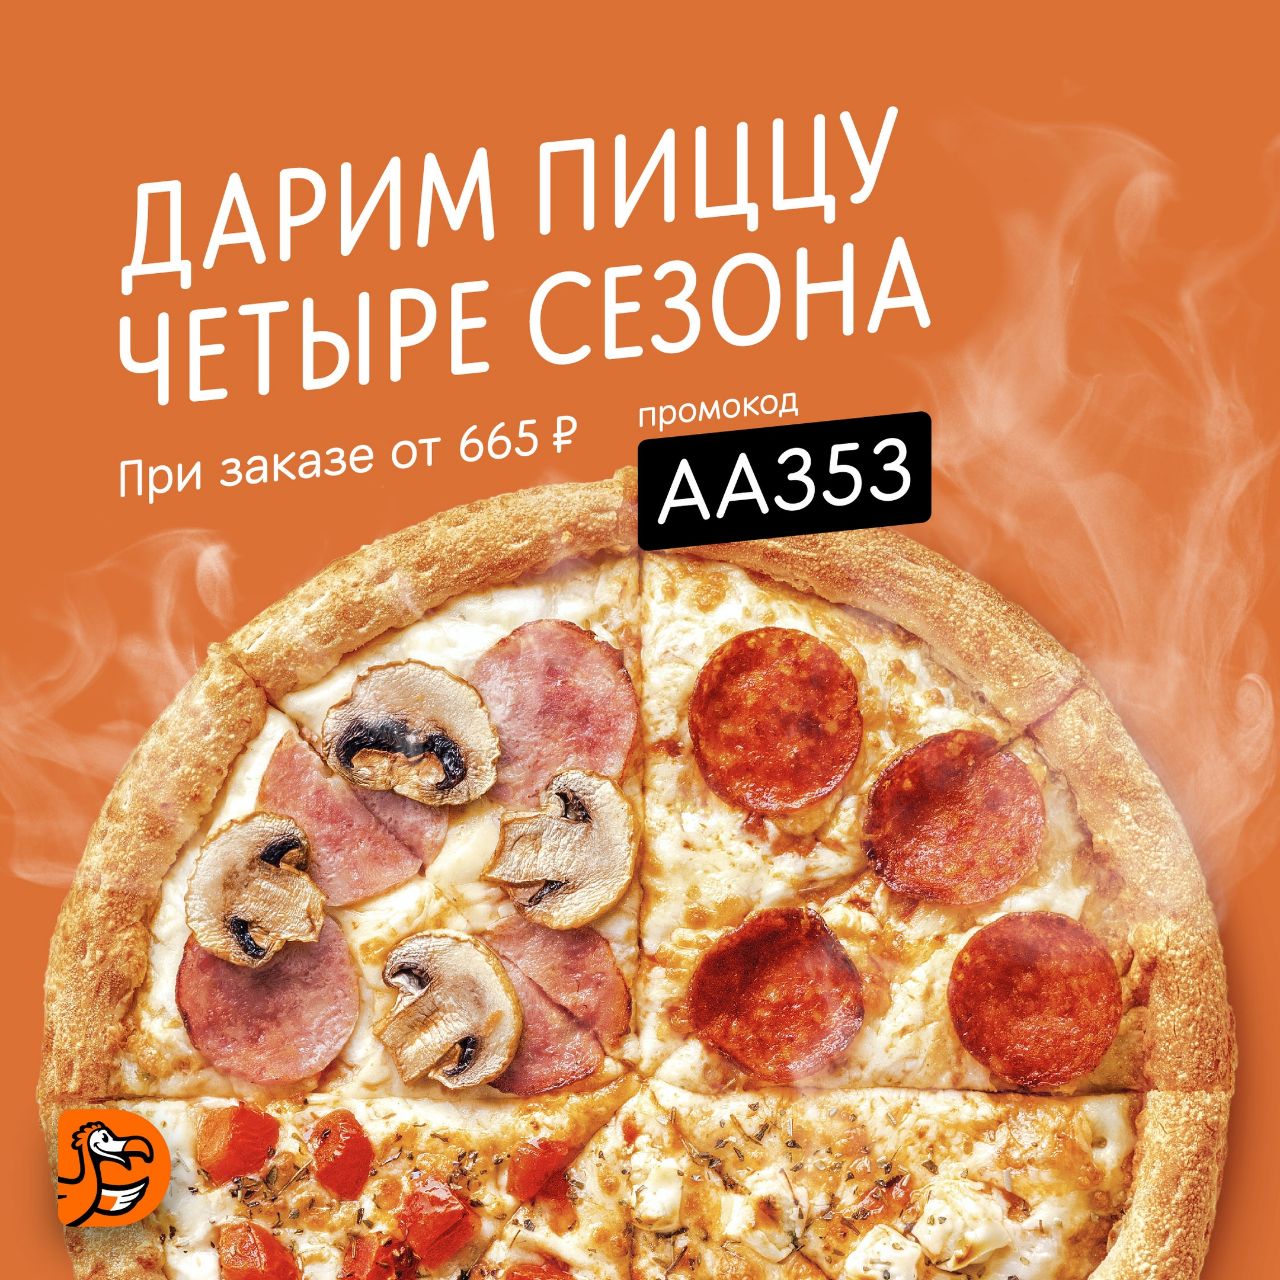 калорийность пиццы четыре сезона фото 25